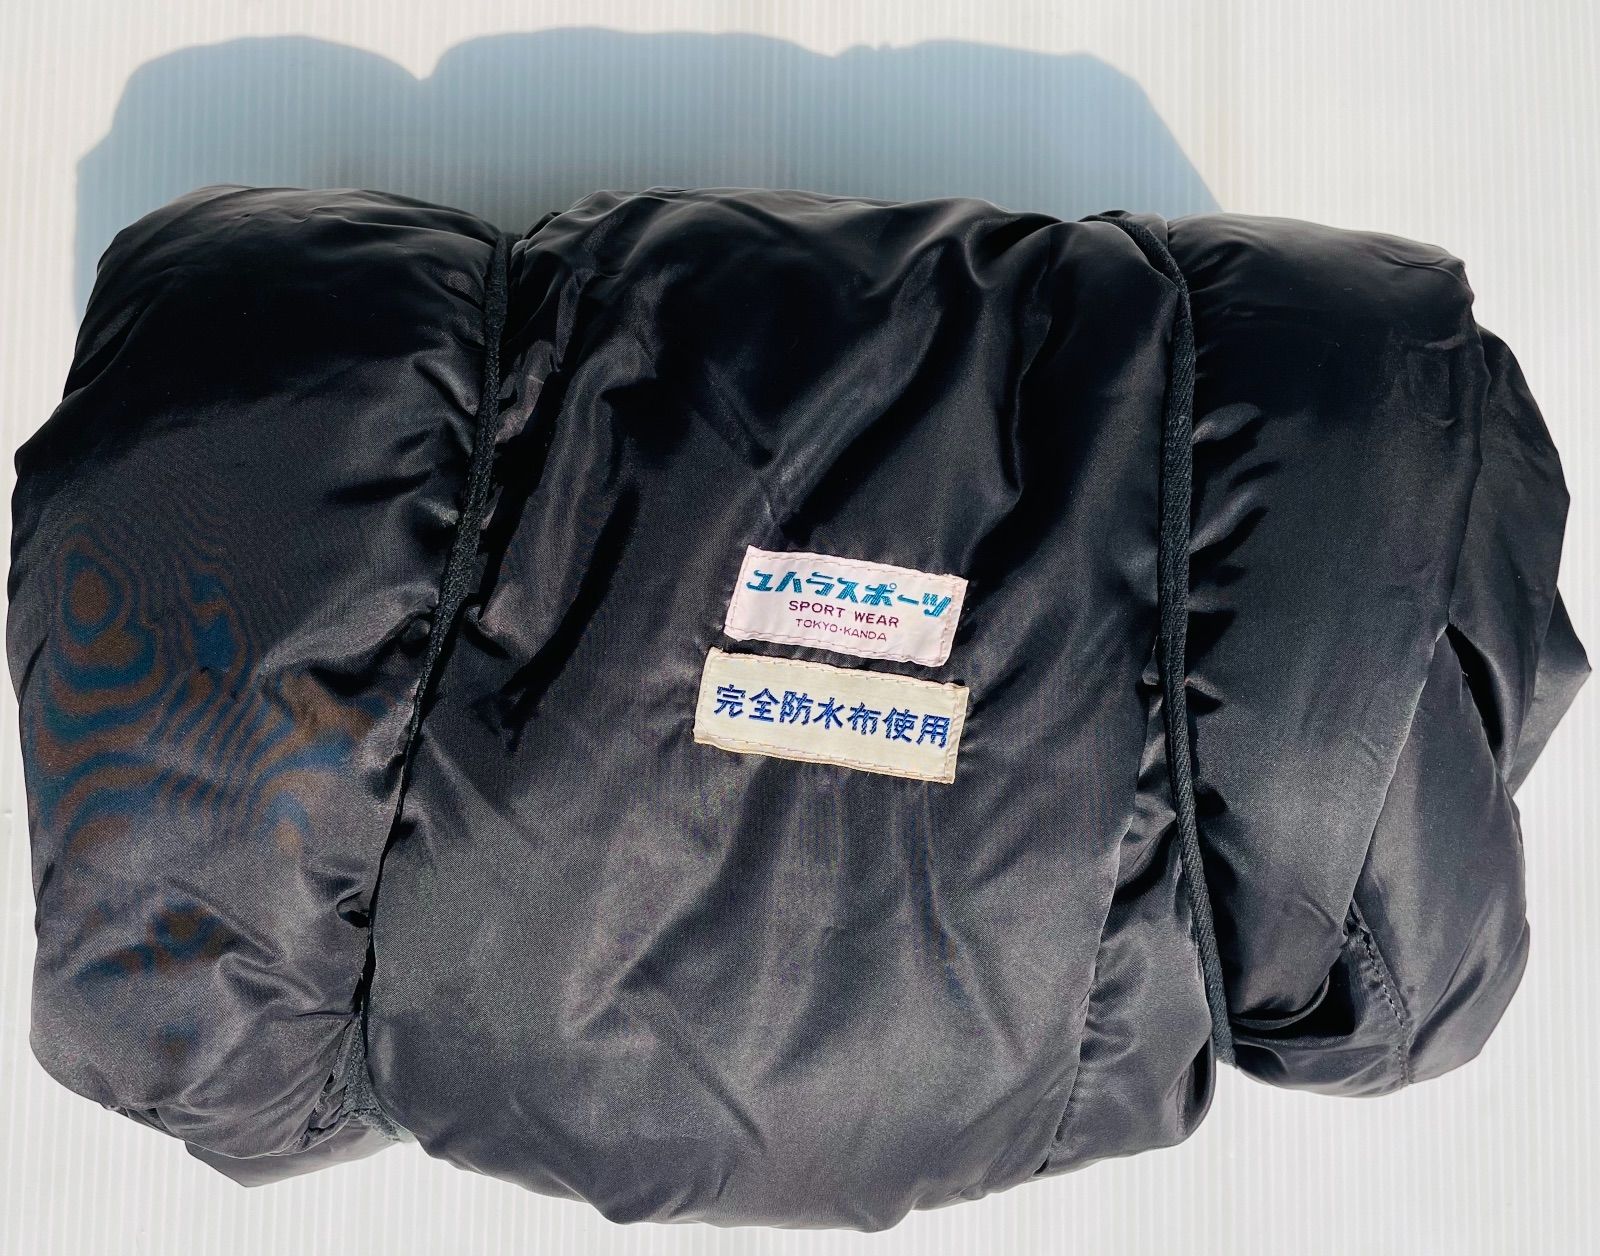 ユハラスポーツ 寝袋 シュラフ 180❌70㎝ 黒ブルー - 登山用品